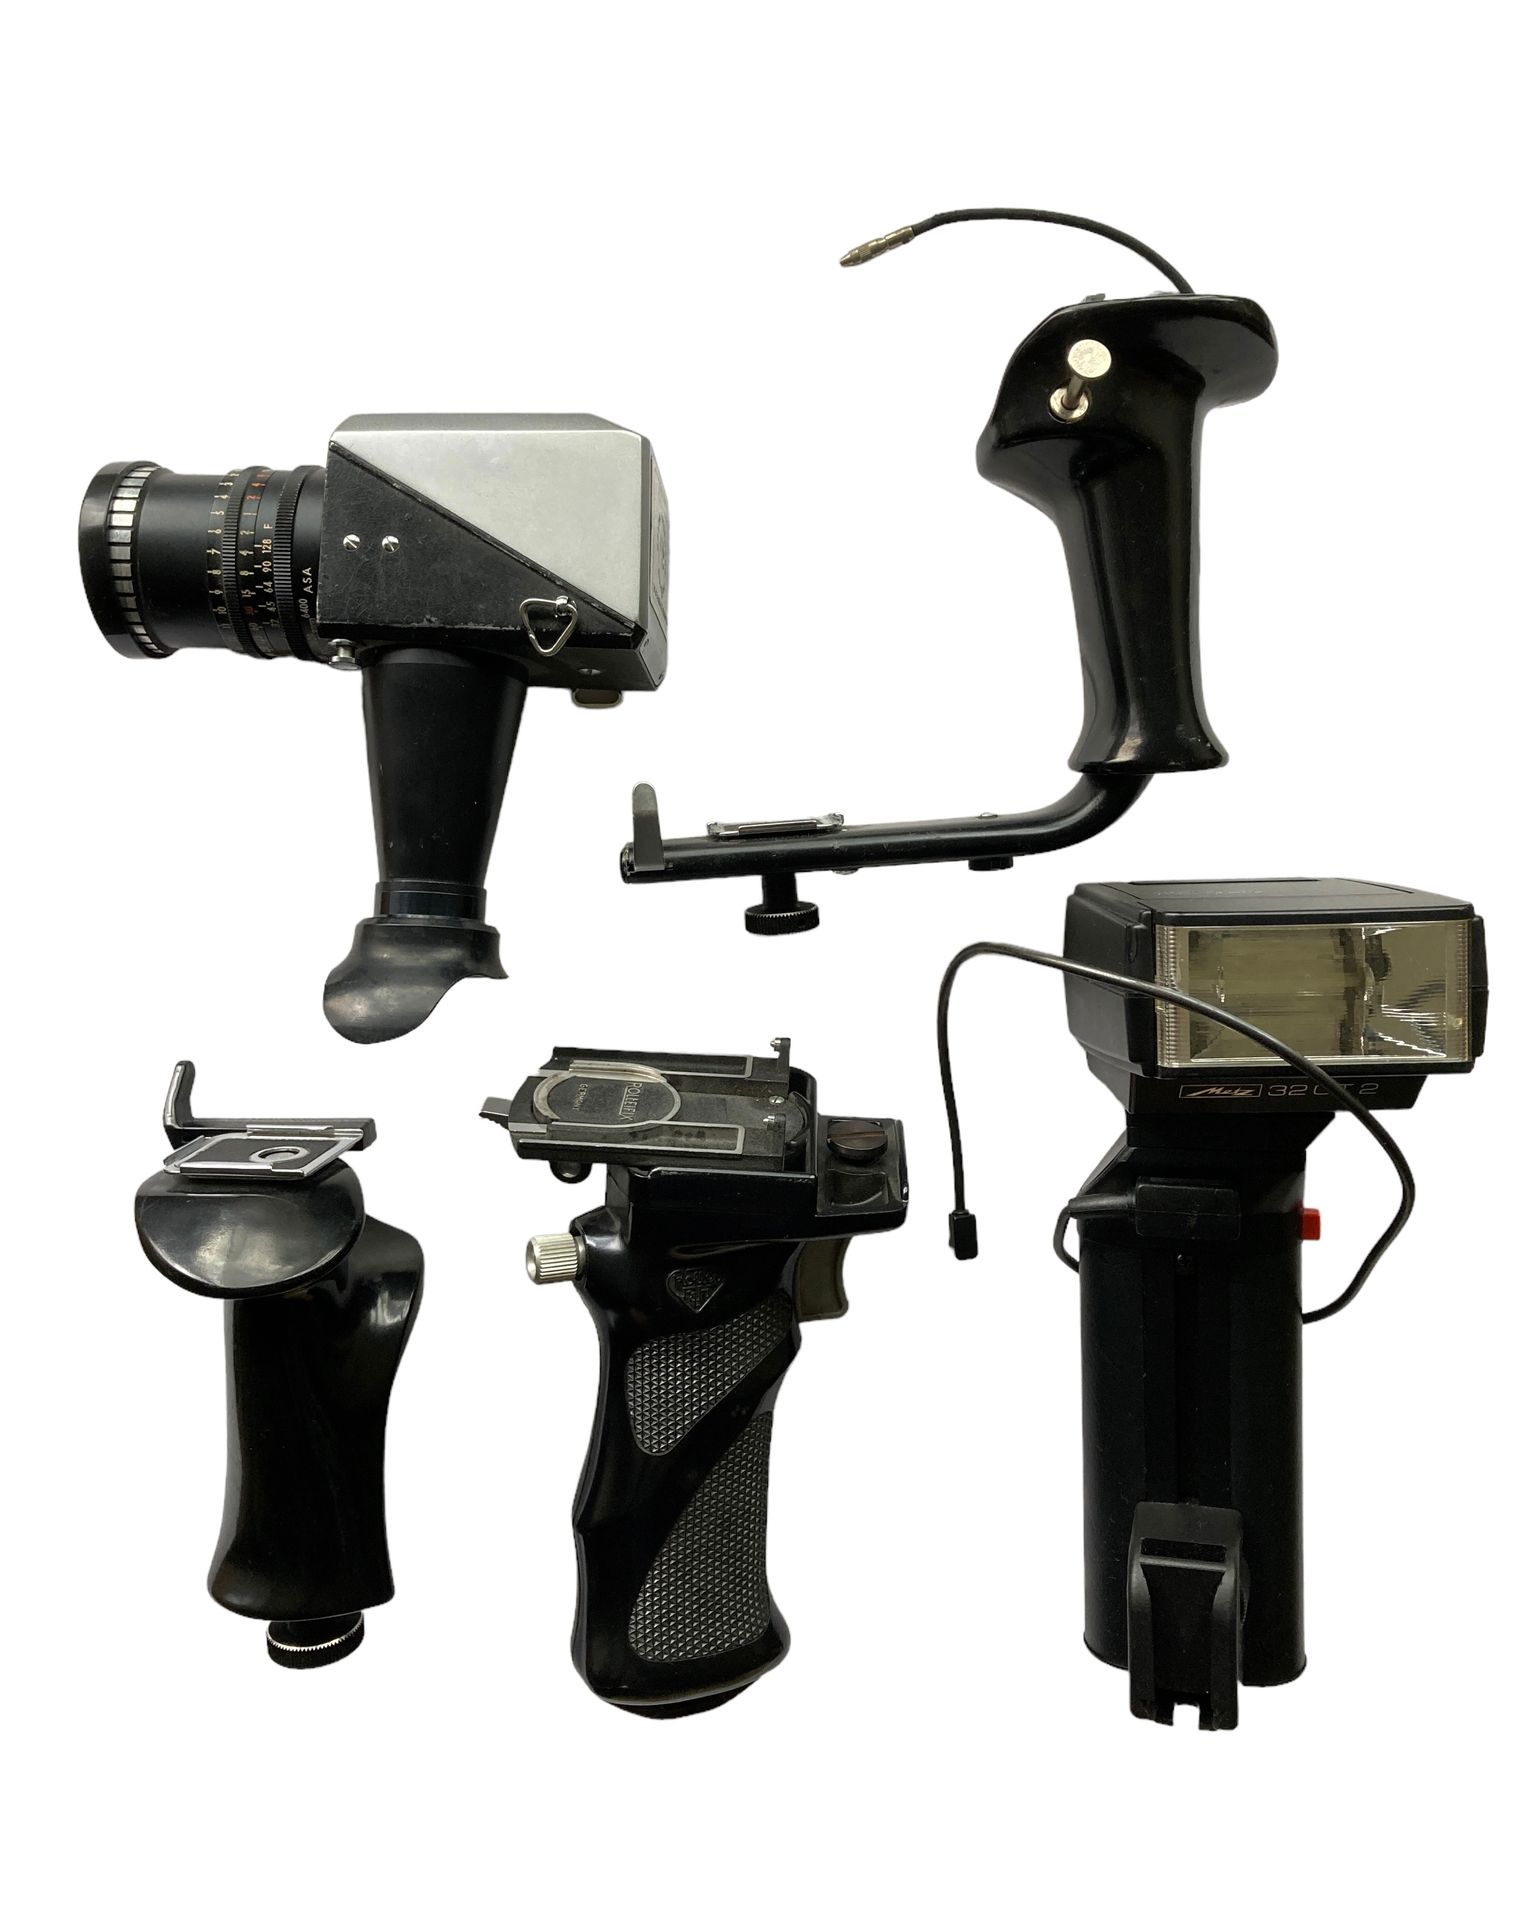 Null W - Juego de accesorios varios para cámara: empuñaduras, flash y varios.